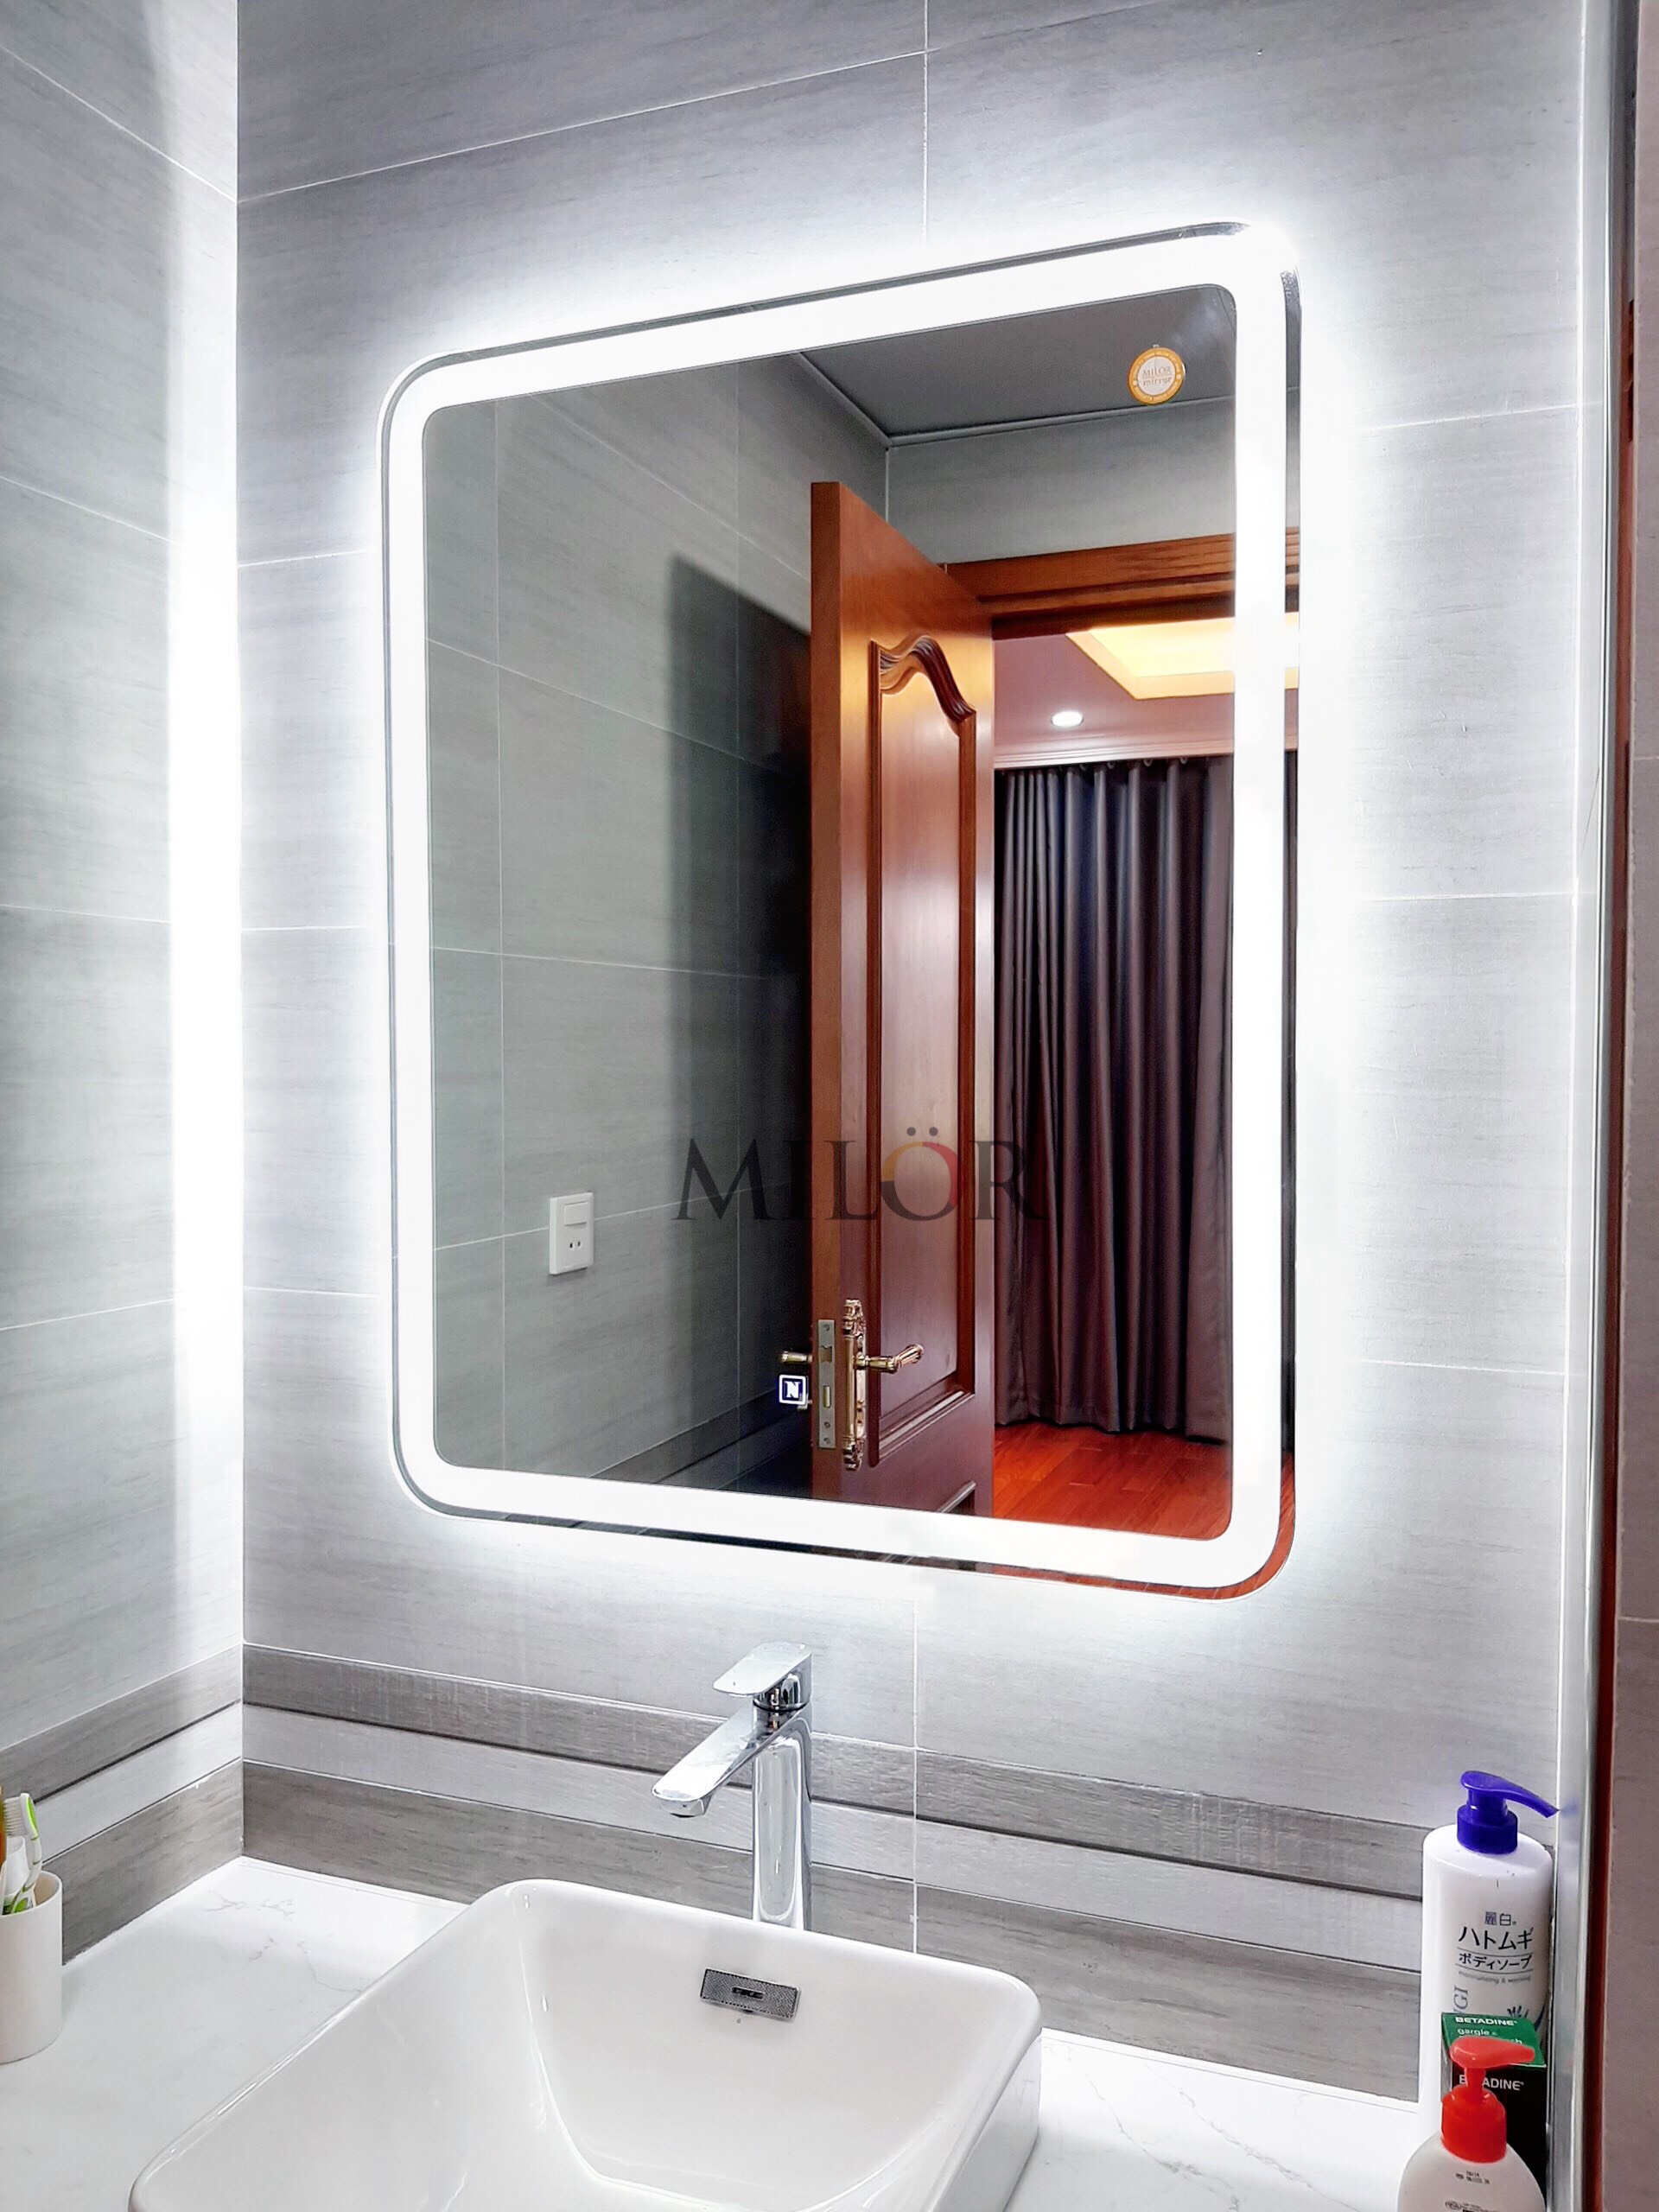 Gương phòng tắm đèn led ML6002D hiện đại năm 2024 sẽ là sự lựa chọn hoàn hảo cho phòng tắm của bạn. Được thiết kế tinh xảo, gương phòng tắm này sẽ mang đến ánh sáng đầy đủ và trung thực. Chất lượng đảm bảo và bảo hành lâu dài, bạn sẽ không thể tìm thấy một lựa chọn tốt hơn!